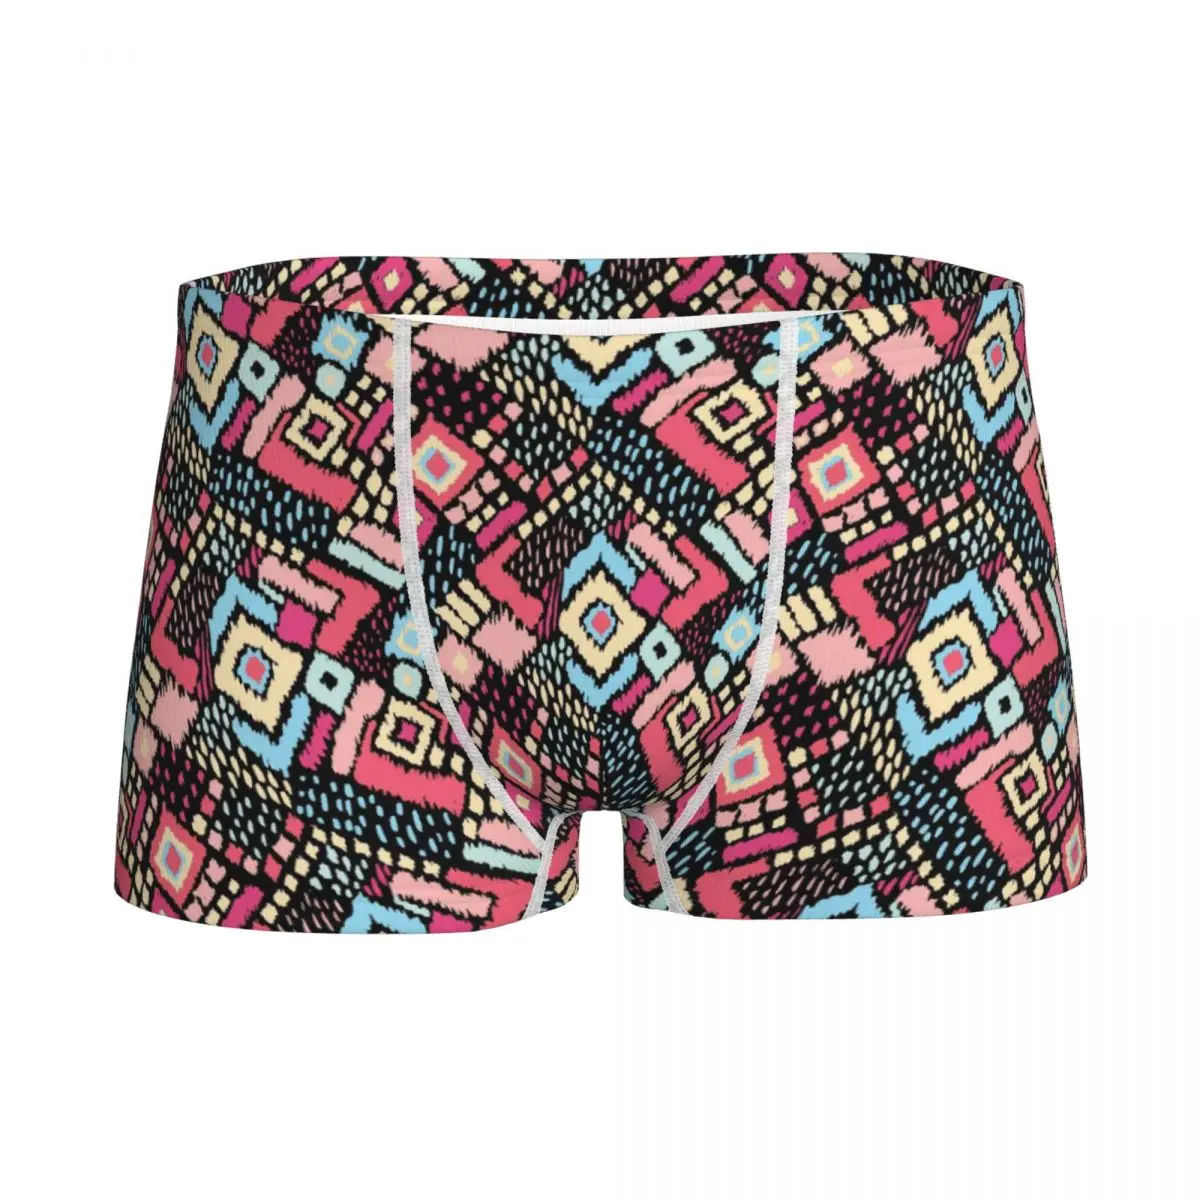 Ikat Geometric Folklore Children Boys Underwear Cotton Shorts Panties Aztec Style Men Boxer Cute Underpants Shorts